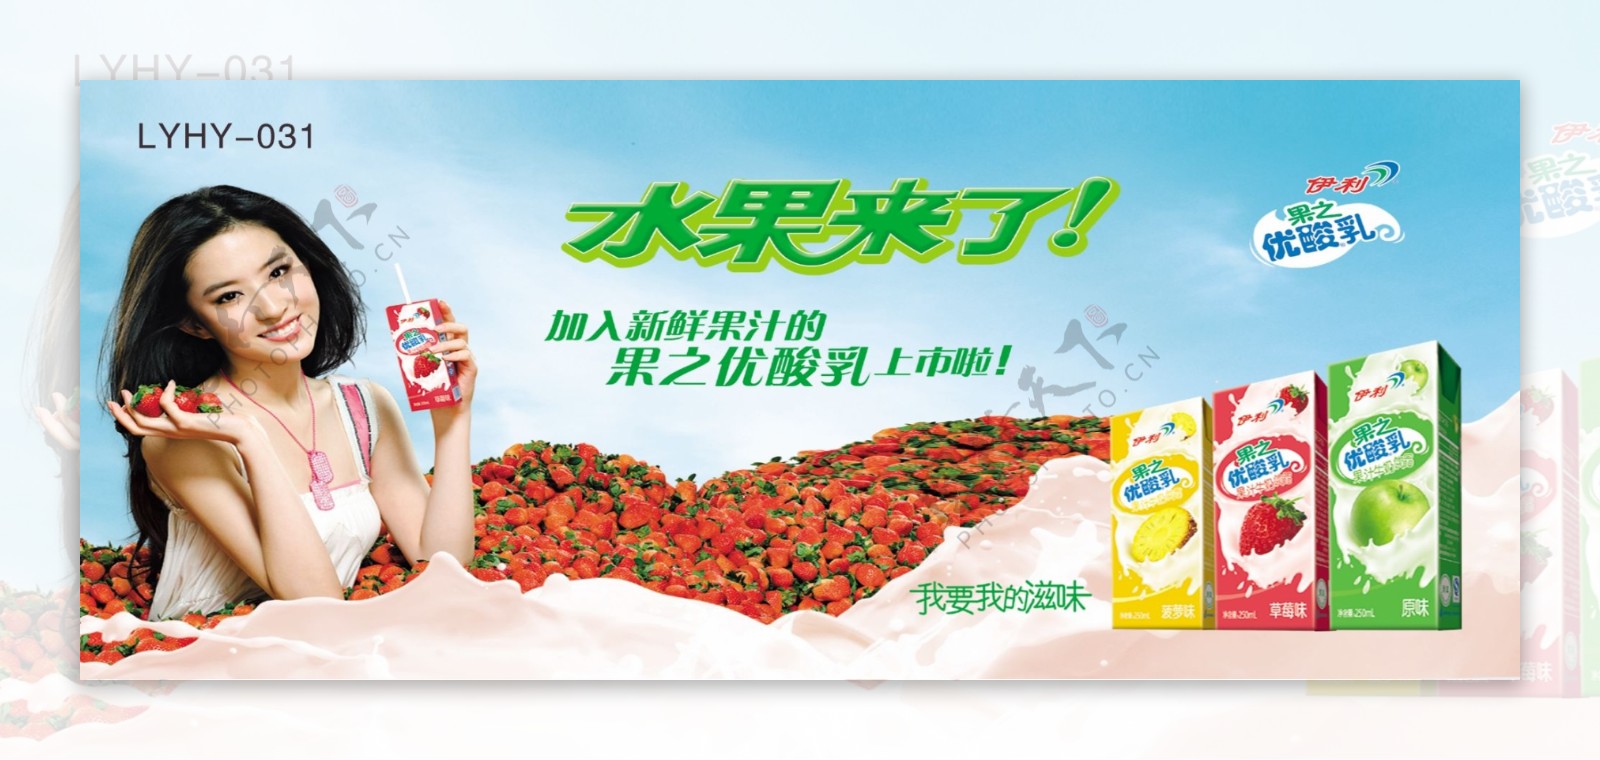 水果伊利优酸乳酸奶草莓刘亦非牛奶图片